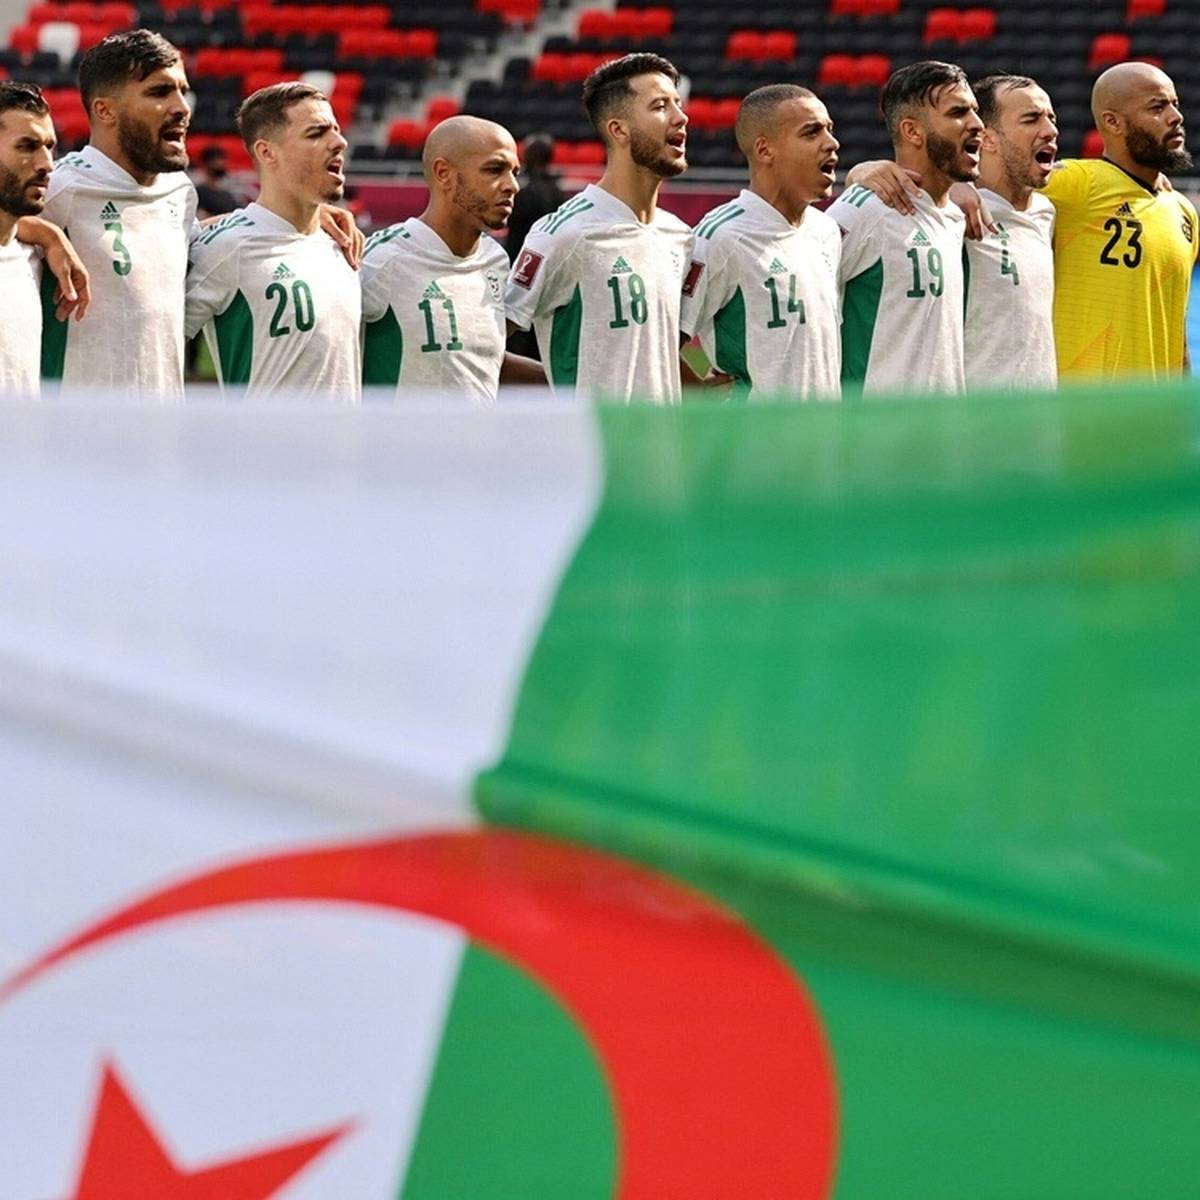 Zwischen Marokko und dem Erzrivalen Algerien ist ein Streit um eine Trikot-Kollektion der algerischen Fußball-Nationalmannschaft entbrannt.